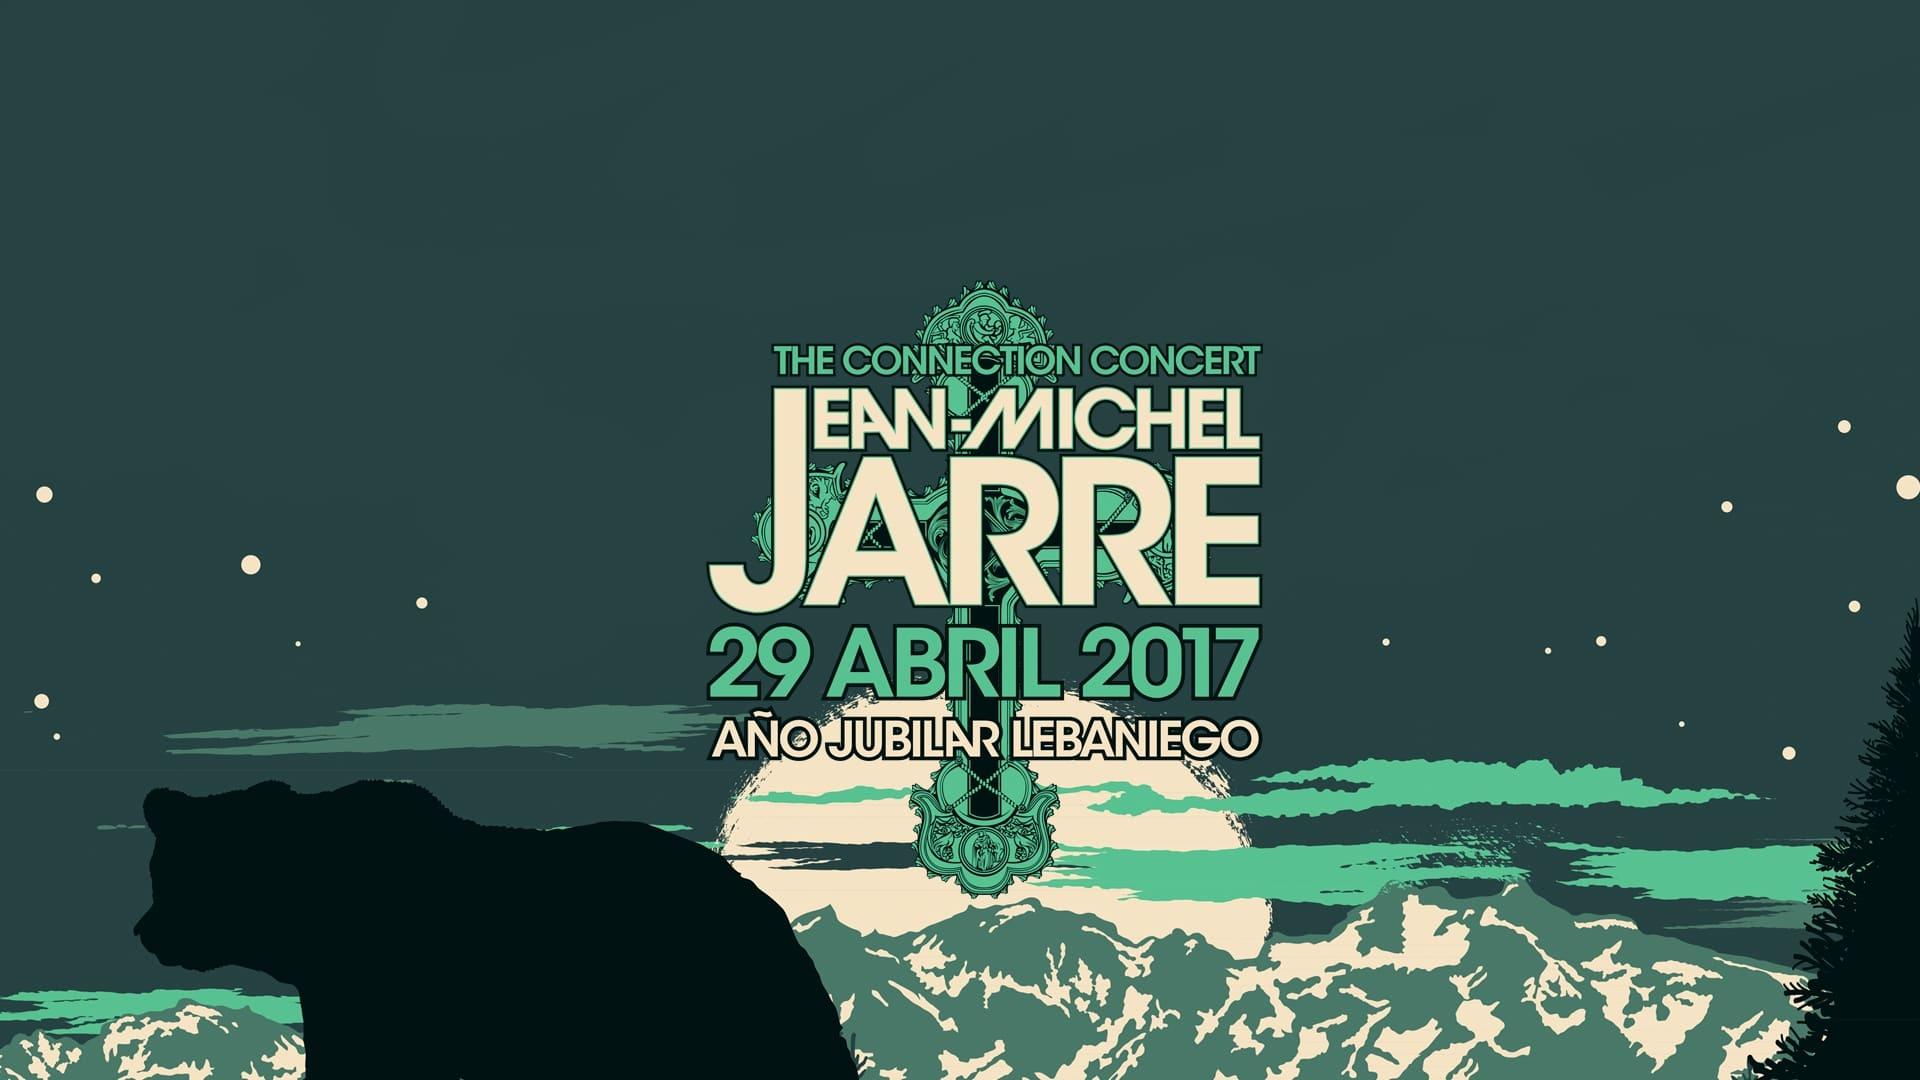 Jean-Michel Jarre - The Connection Concert backdrop